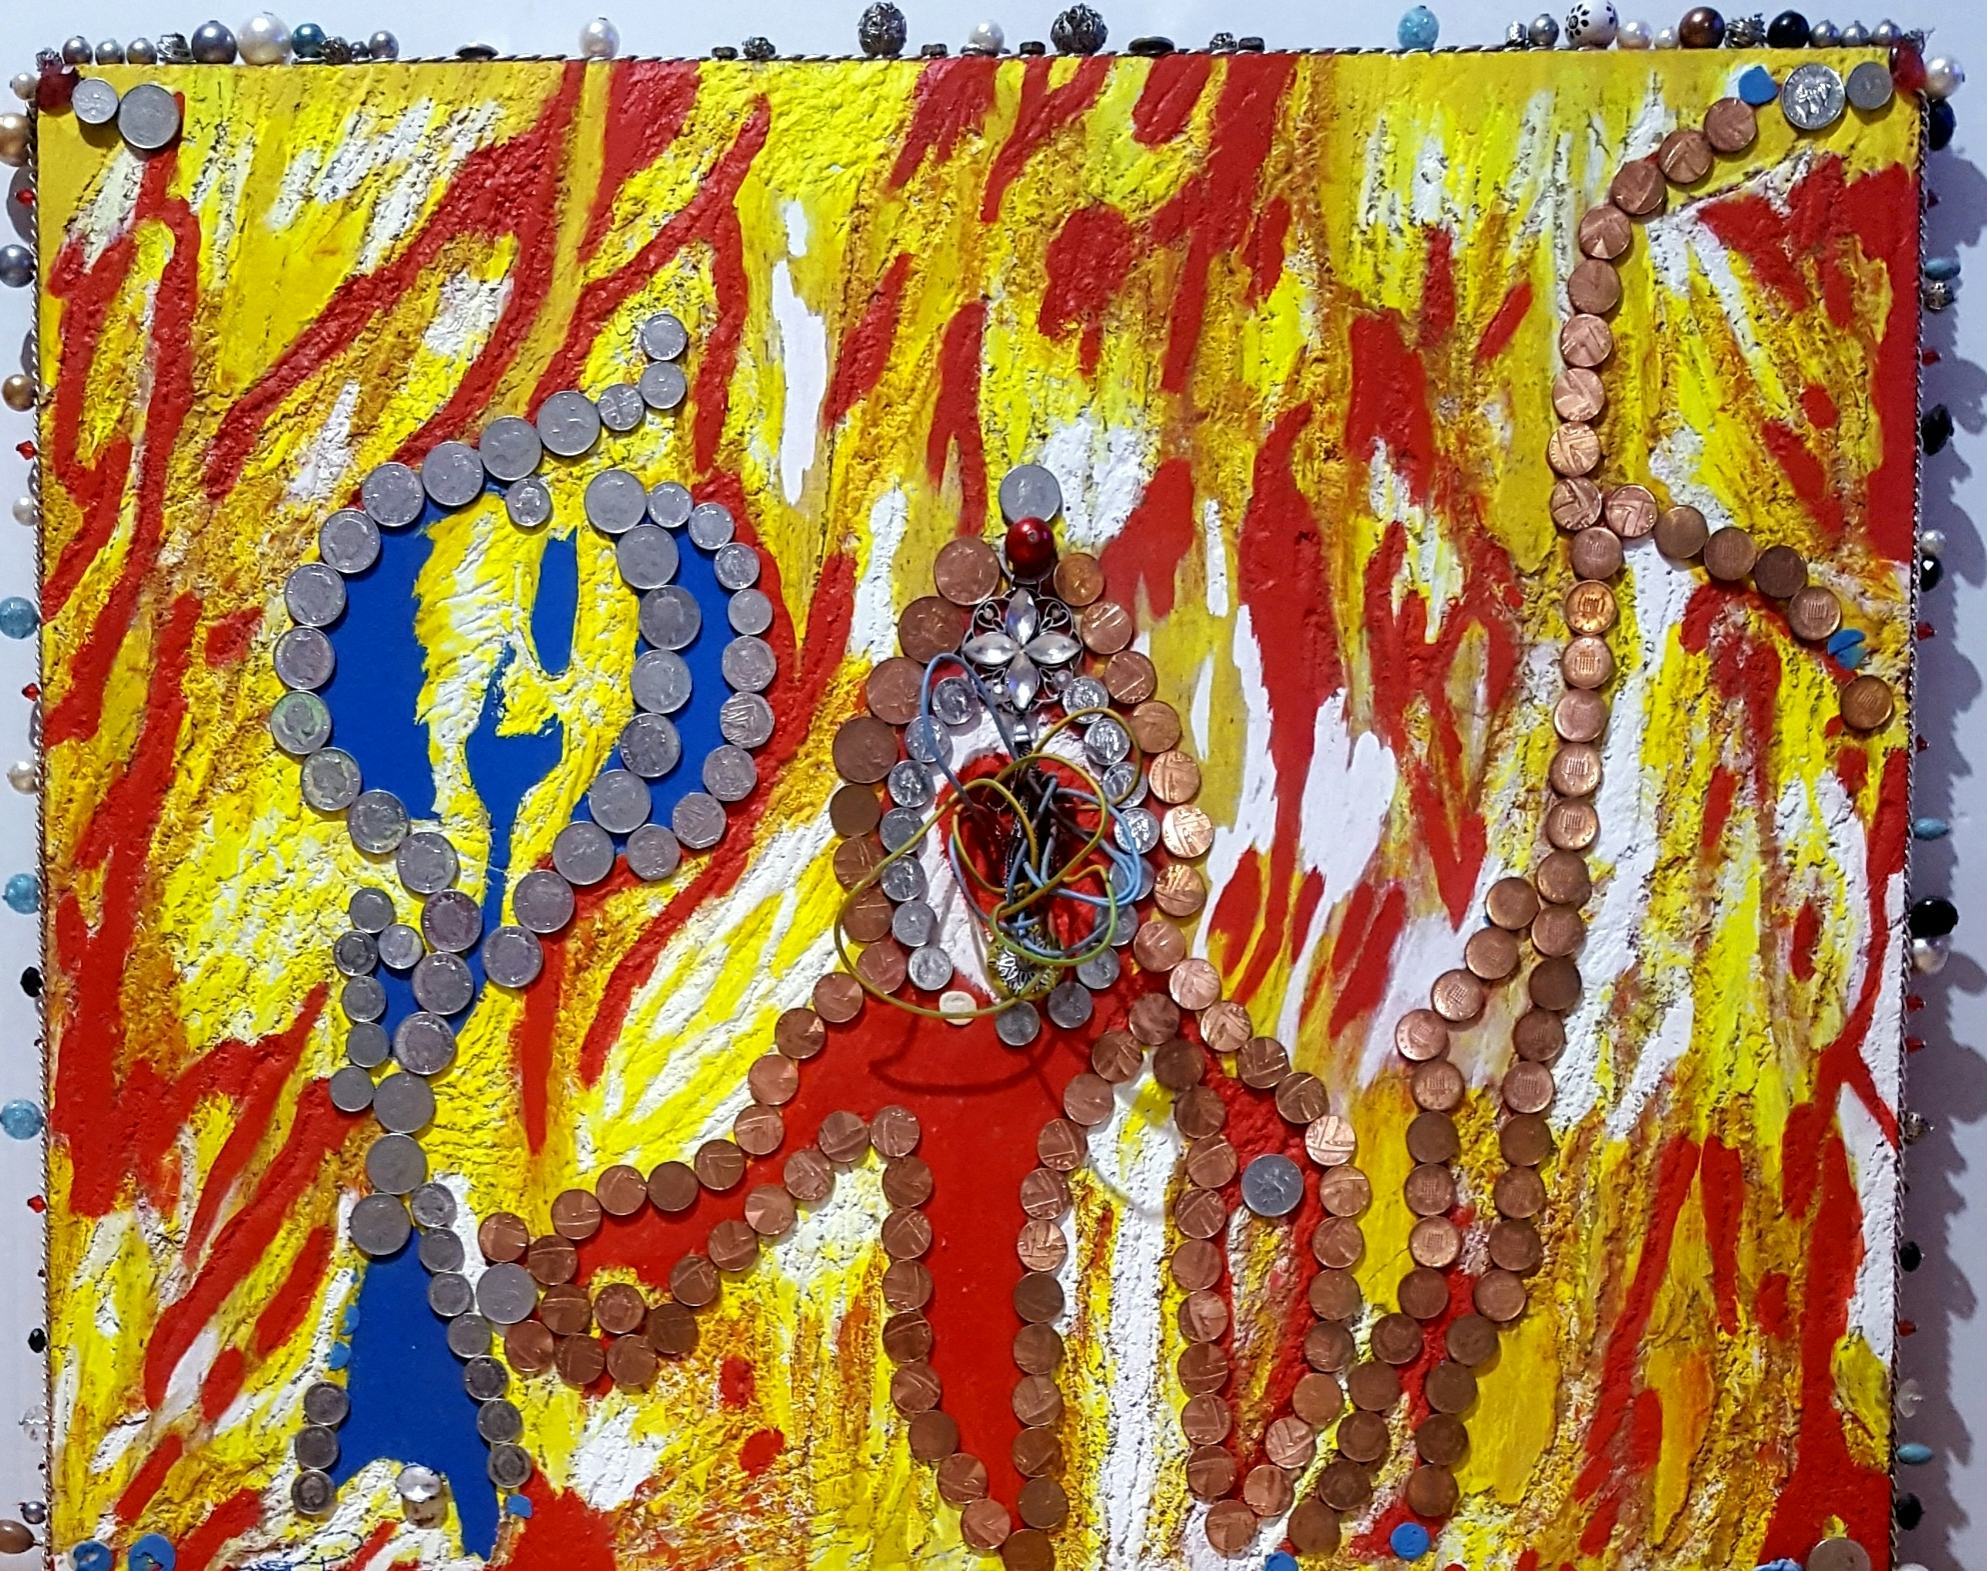 FLAMES SCULPTURE ART 